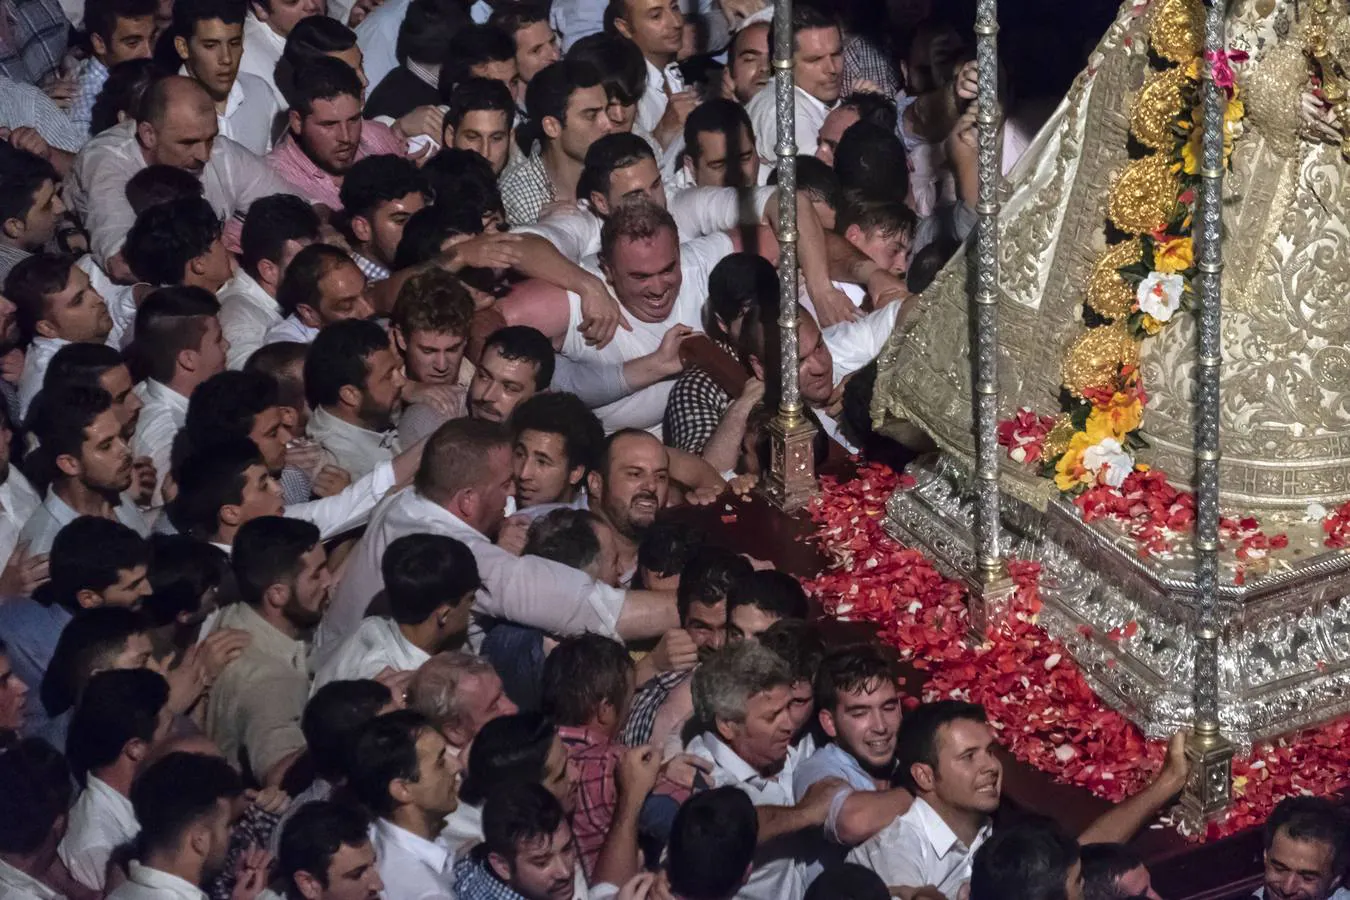 El Rocío 2018: La procesión de la Virgen, en imágenes